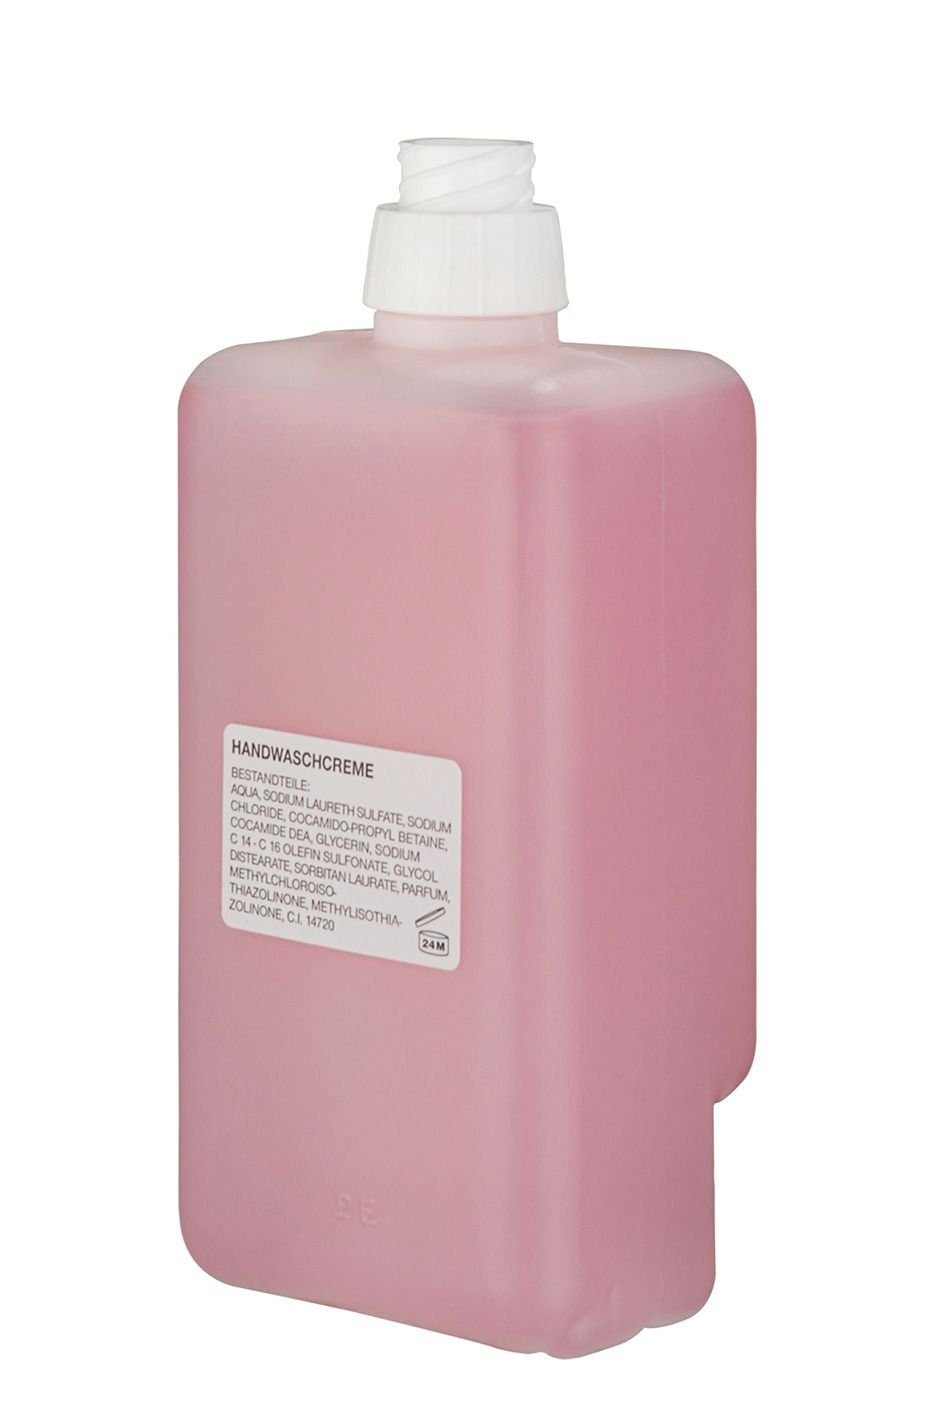 Maxi Zettelkasten Maxi Handwaschcreme - 500 ml, rosé, Nachfüllpackung (für Spendersyste